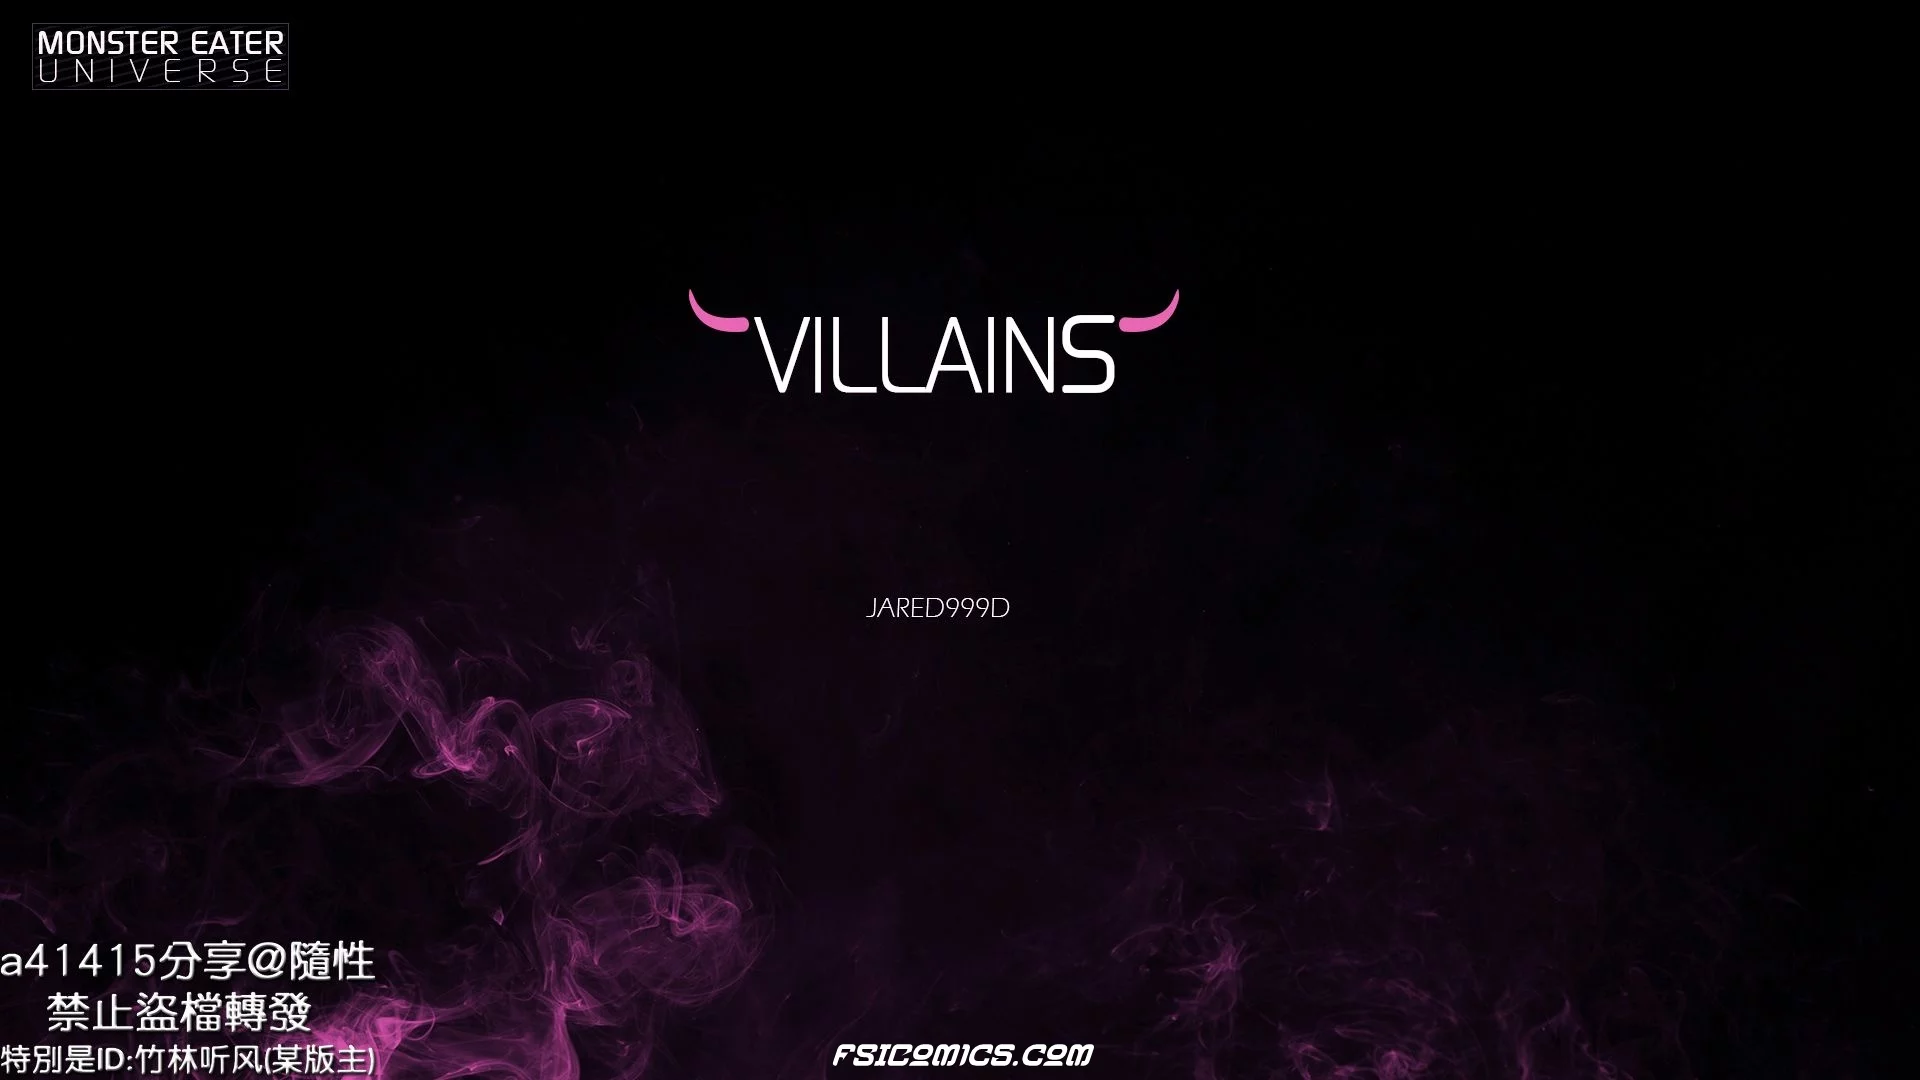 Villains Chapter 1 -Jared999D - 11 - FSIComics